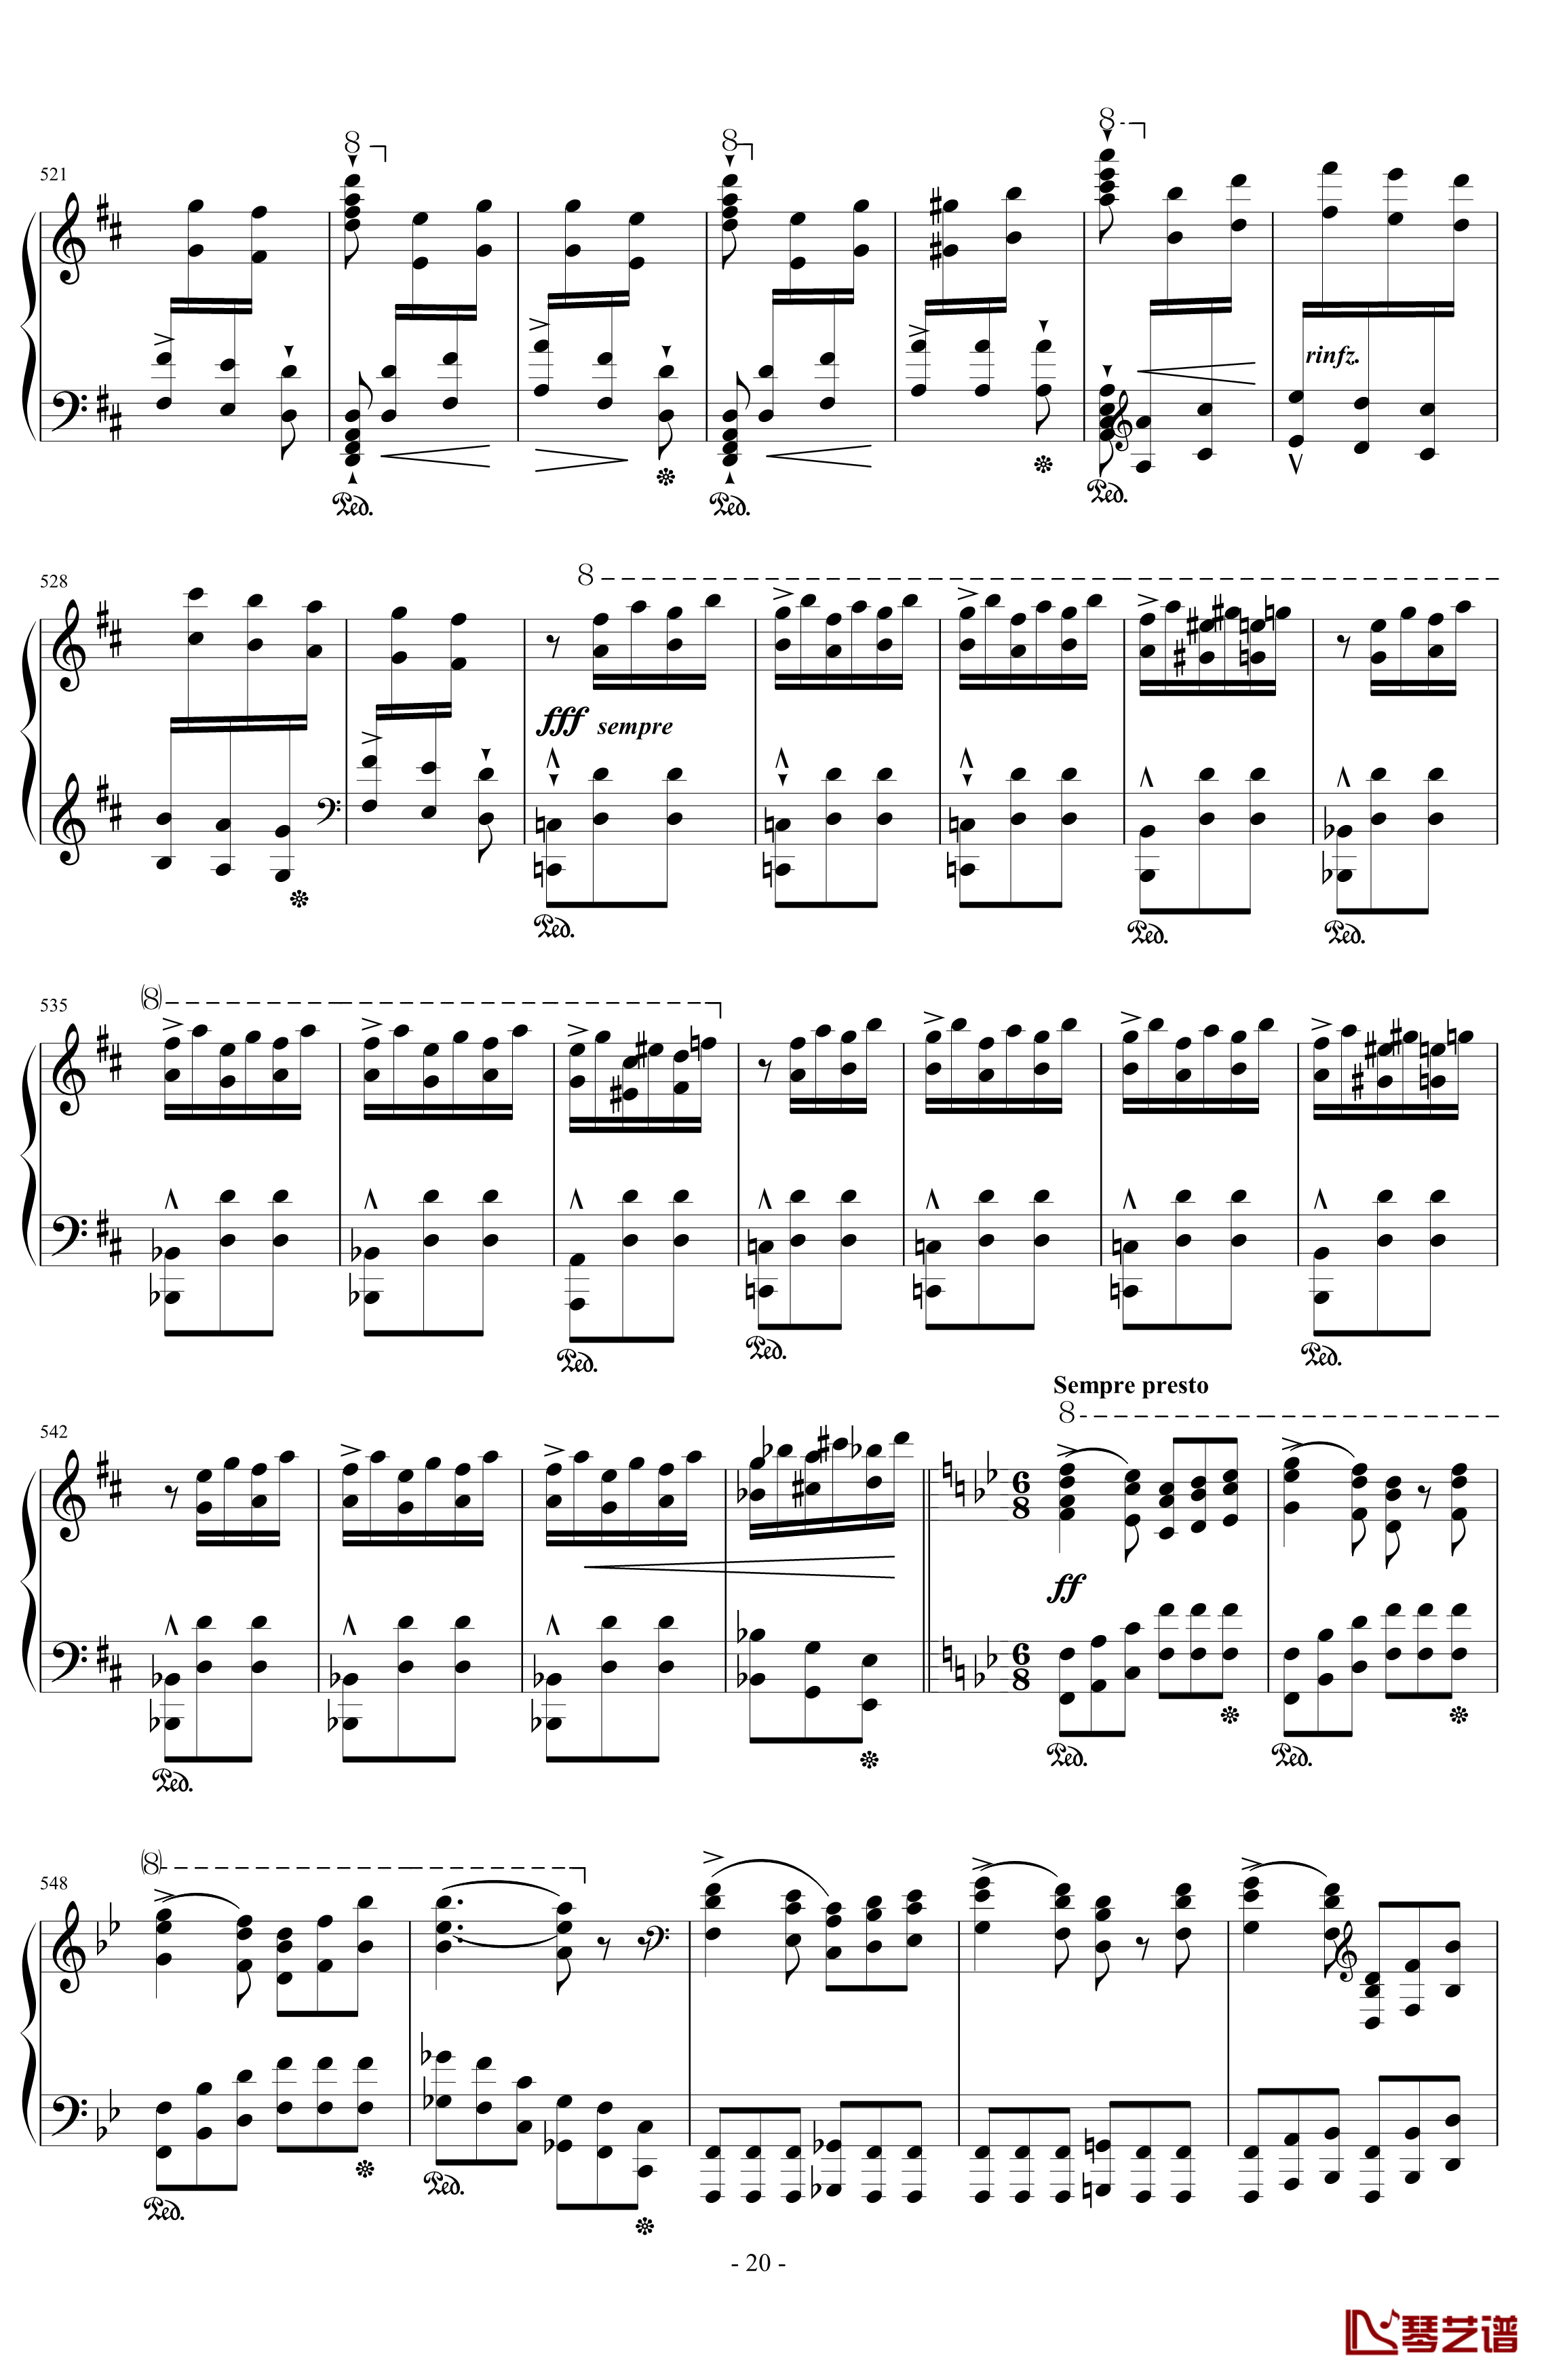 西班牙狂想曲钢琴谱-难度极高的炫技大作-李斯特20